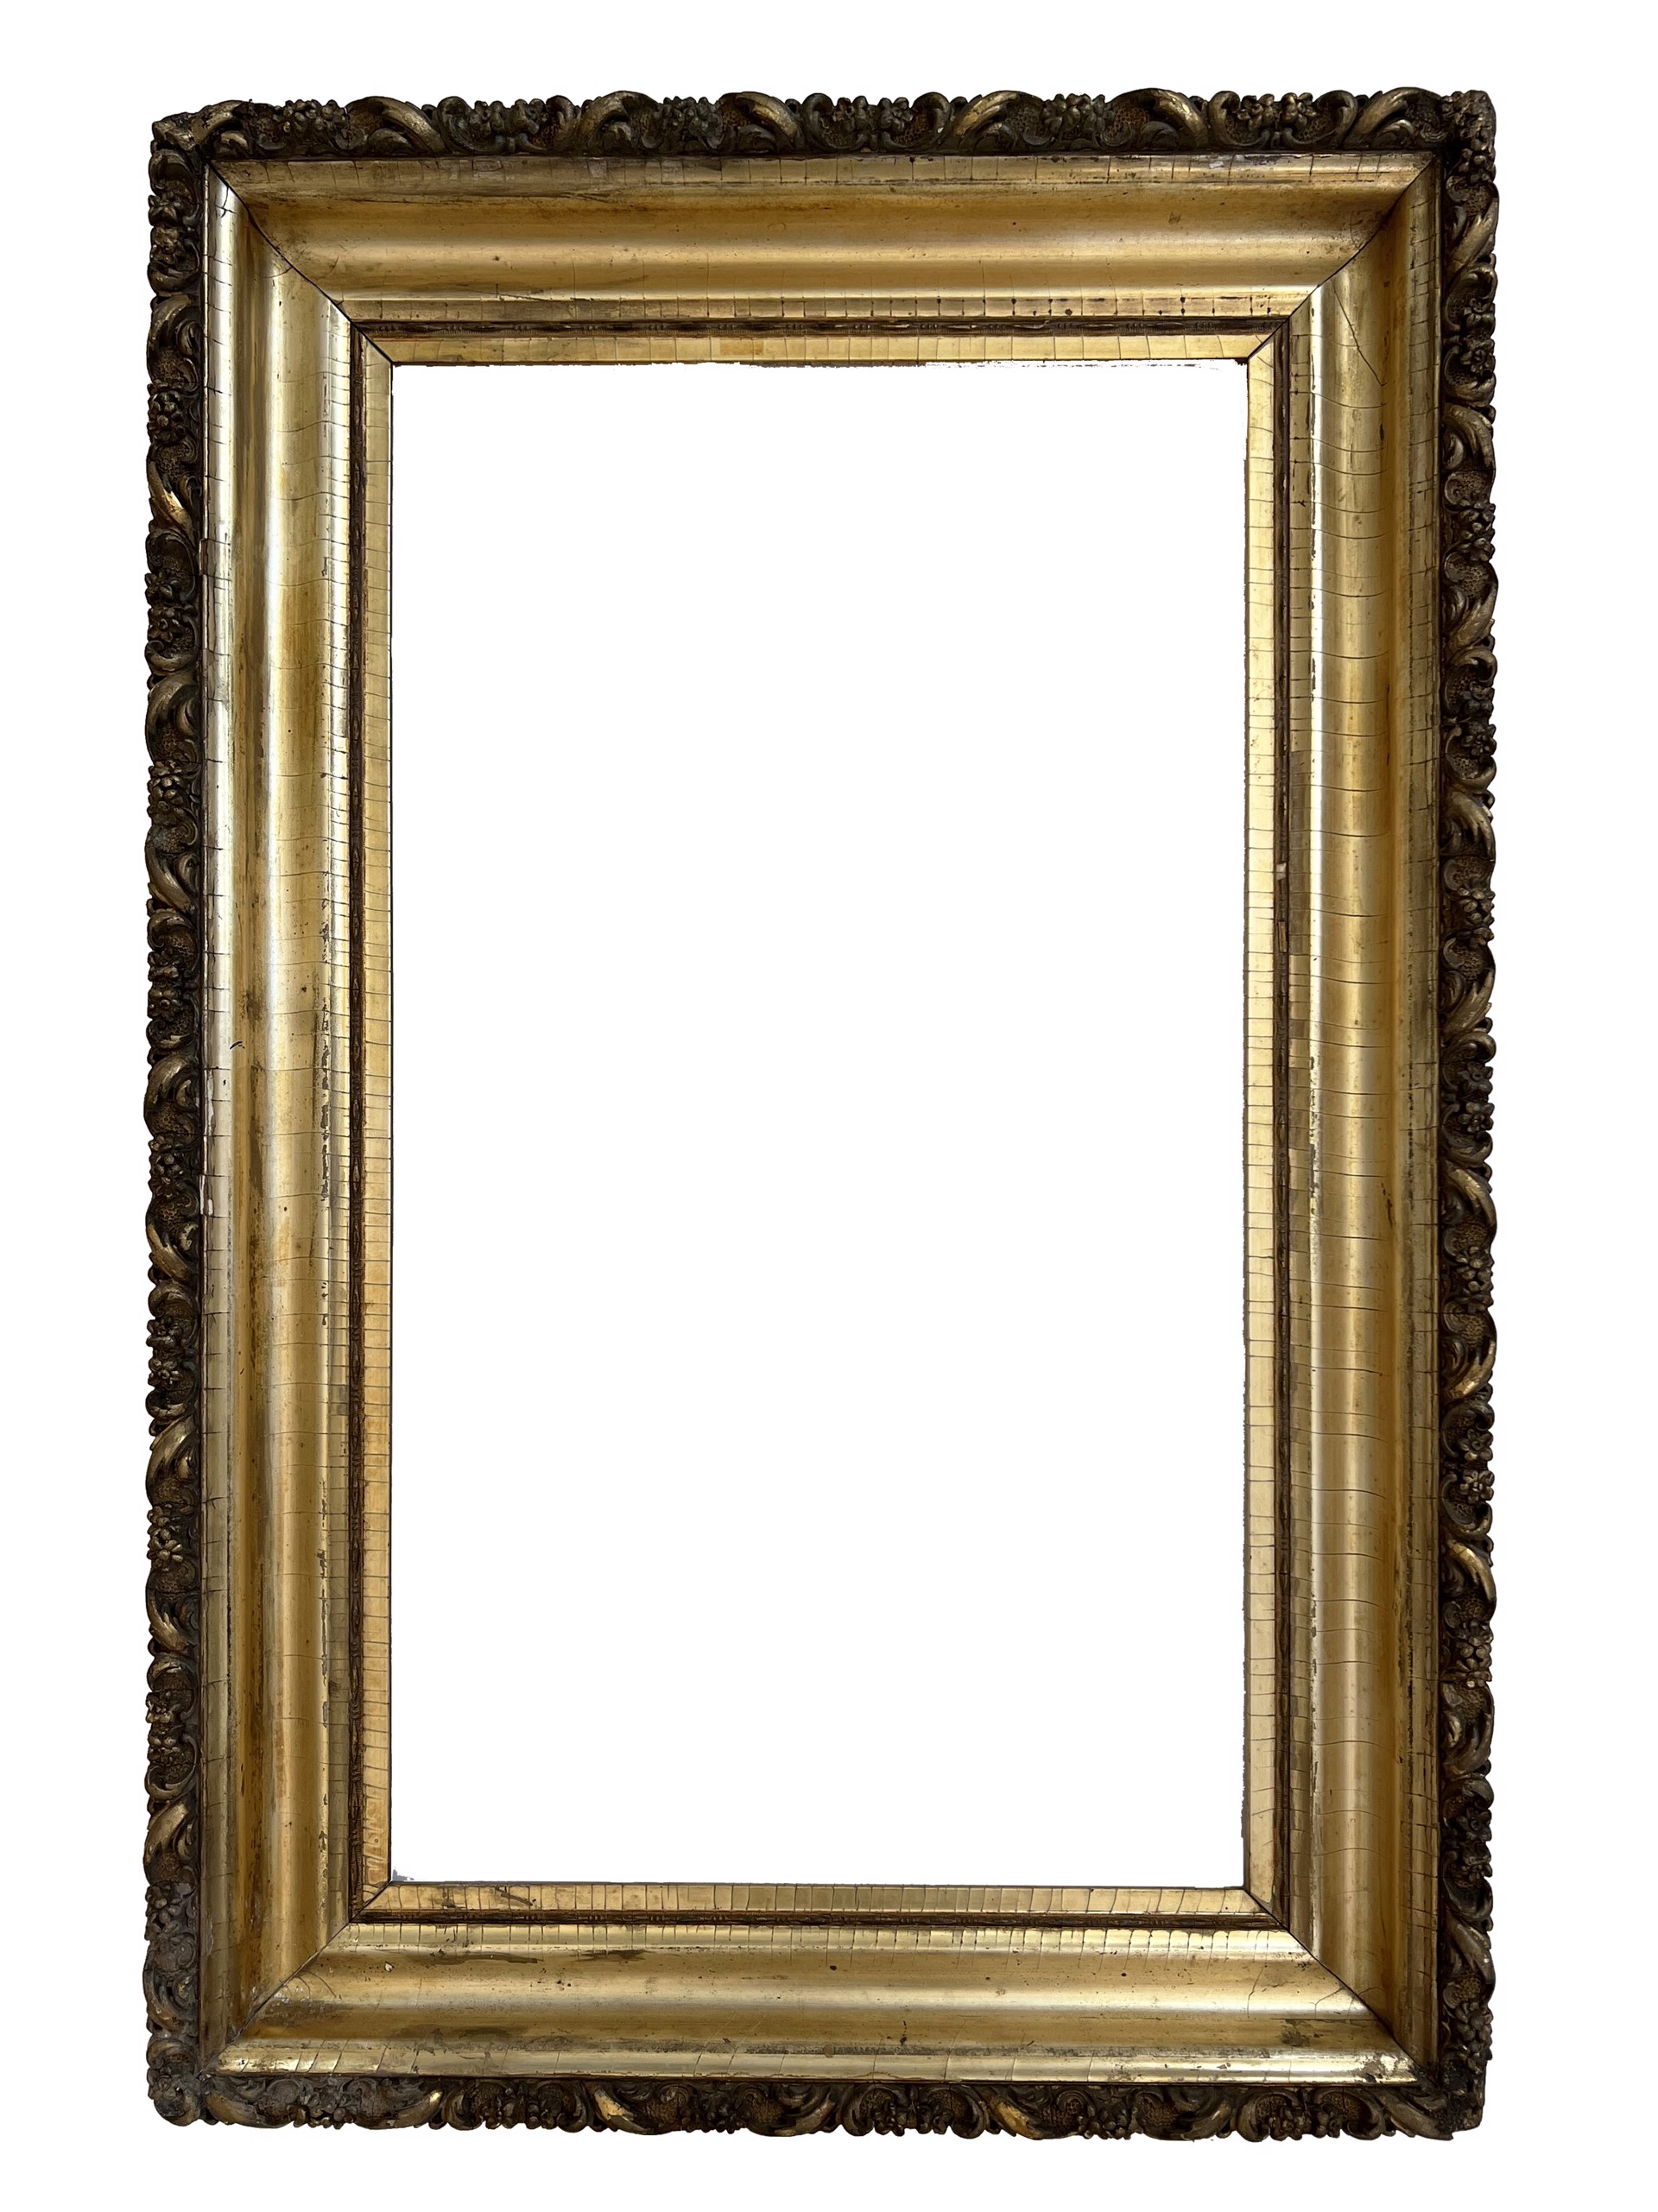 Antique Gold Leaf Frame with Ornate Detail by Antique Frame